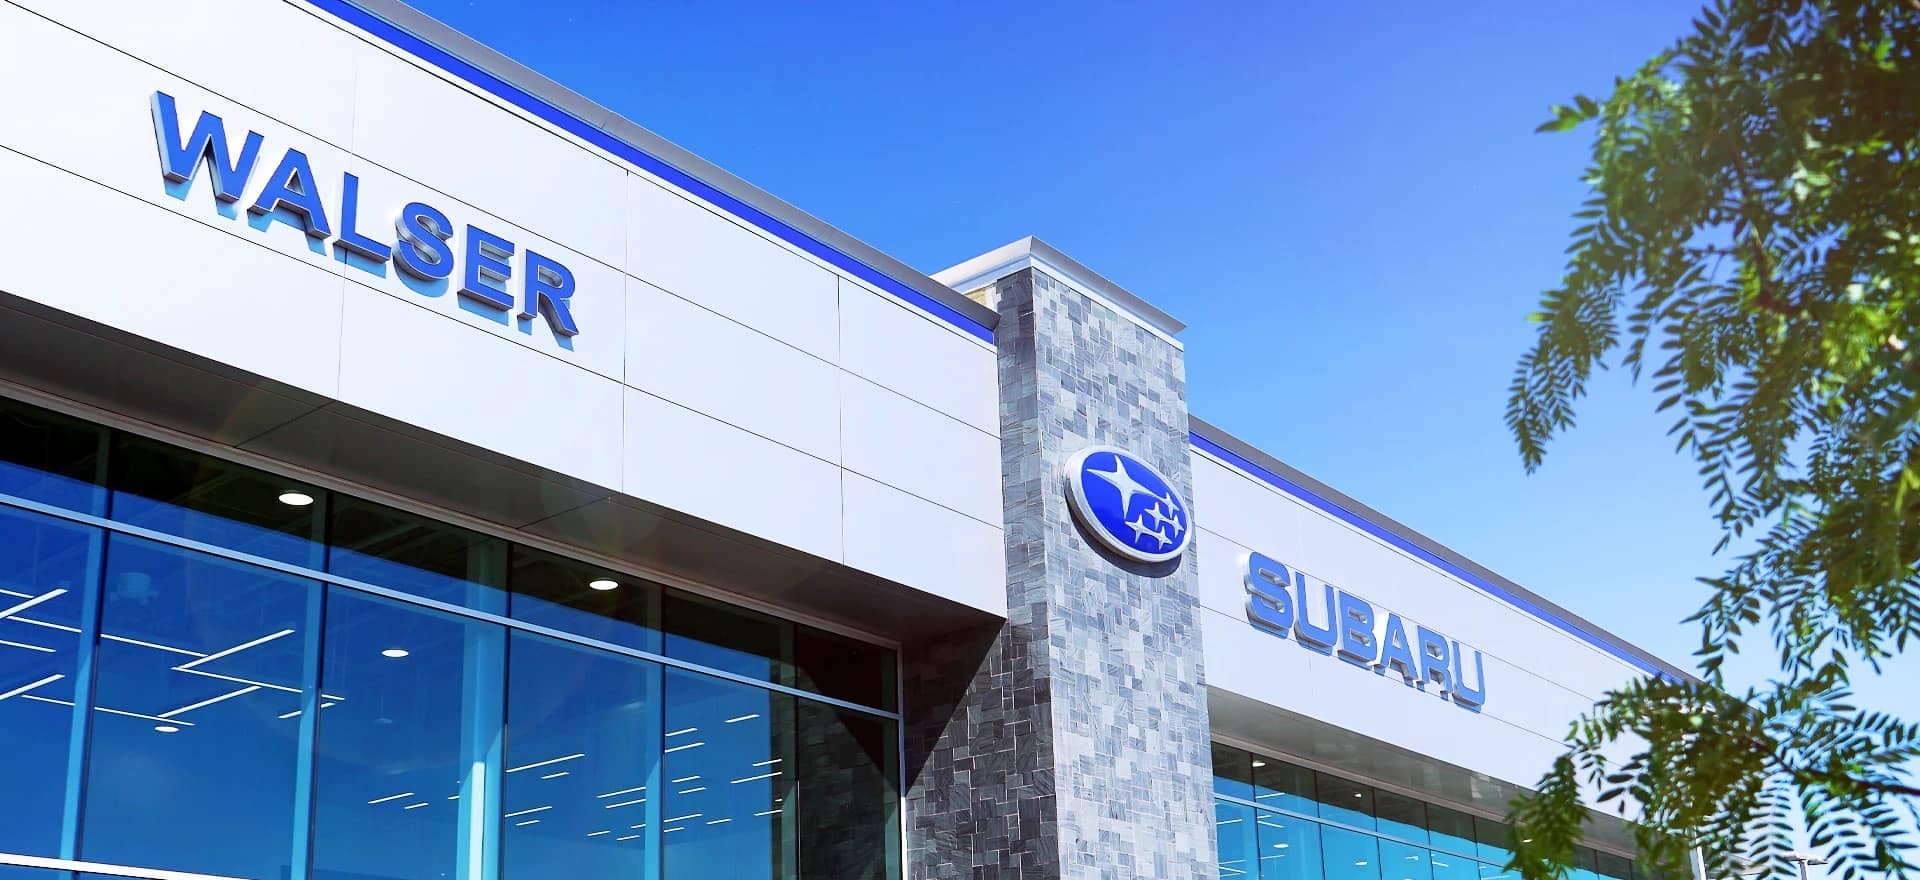 Walser Subaru dealership close up